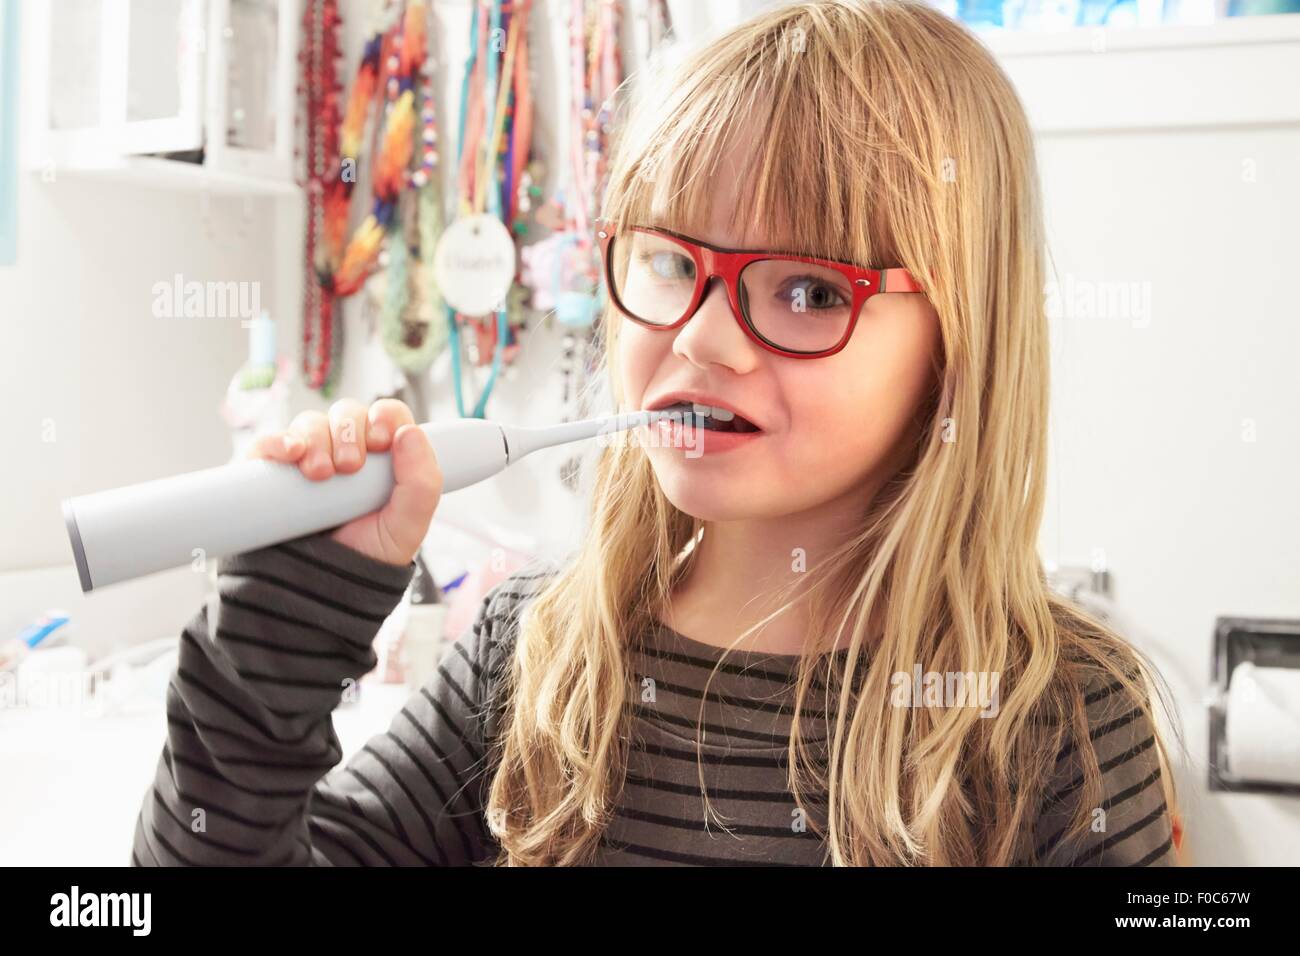 Ritratto di giovane ragazza la spazzolatura dei denti Foto Stock